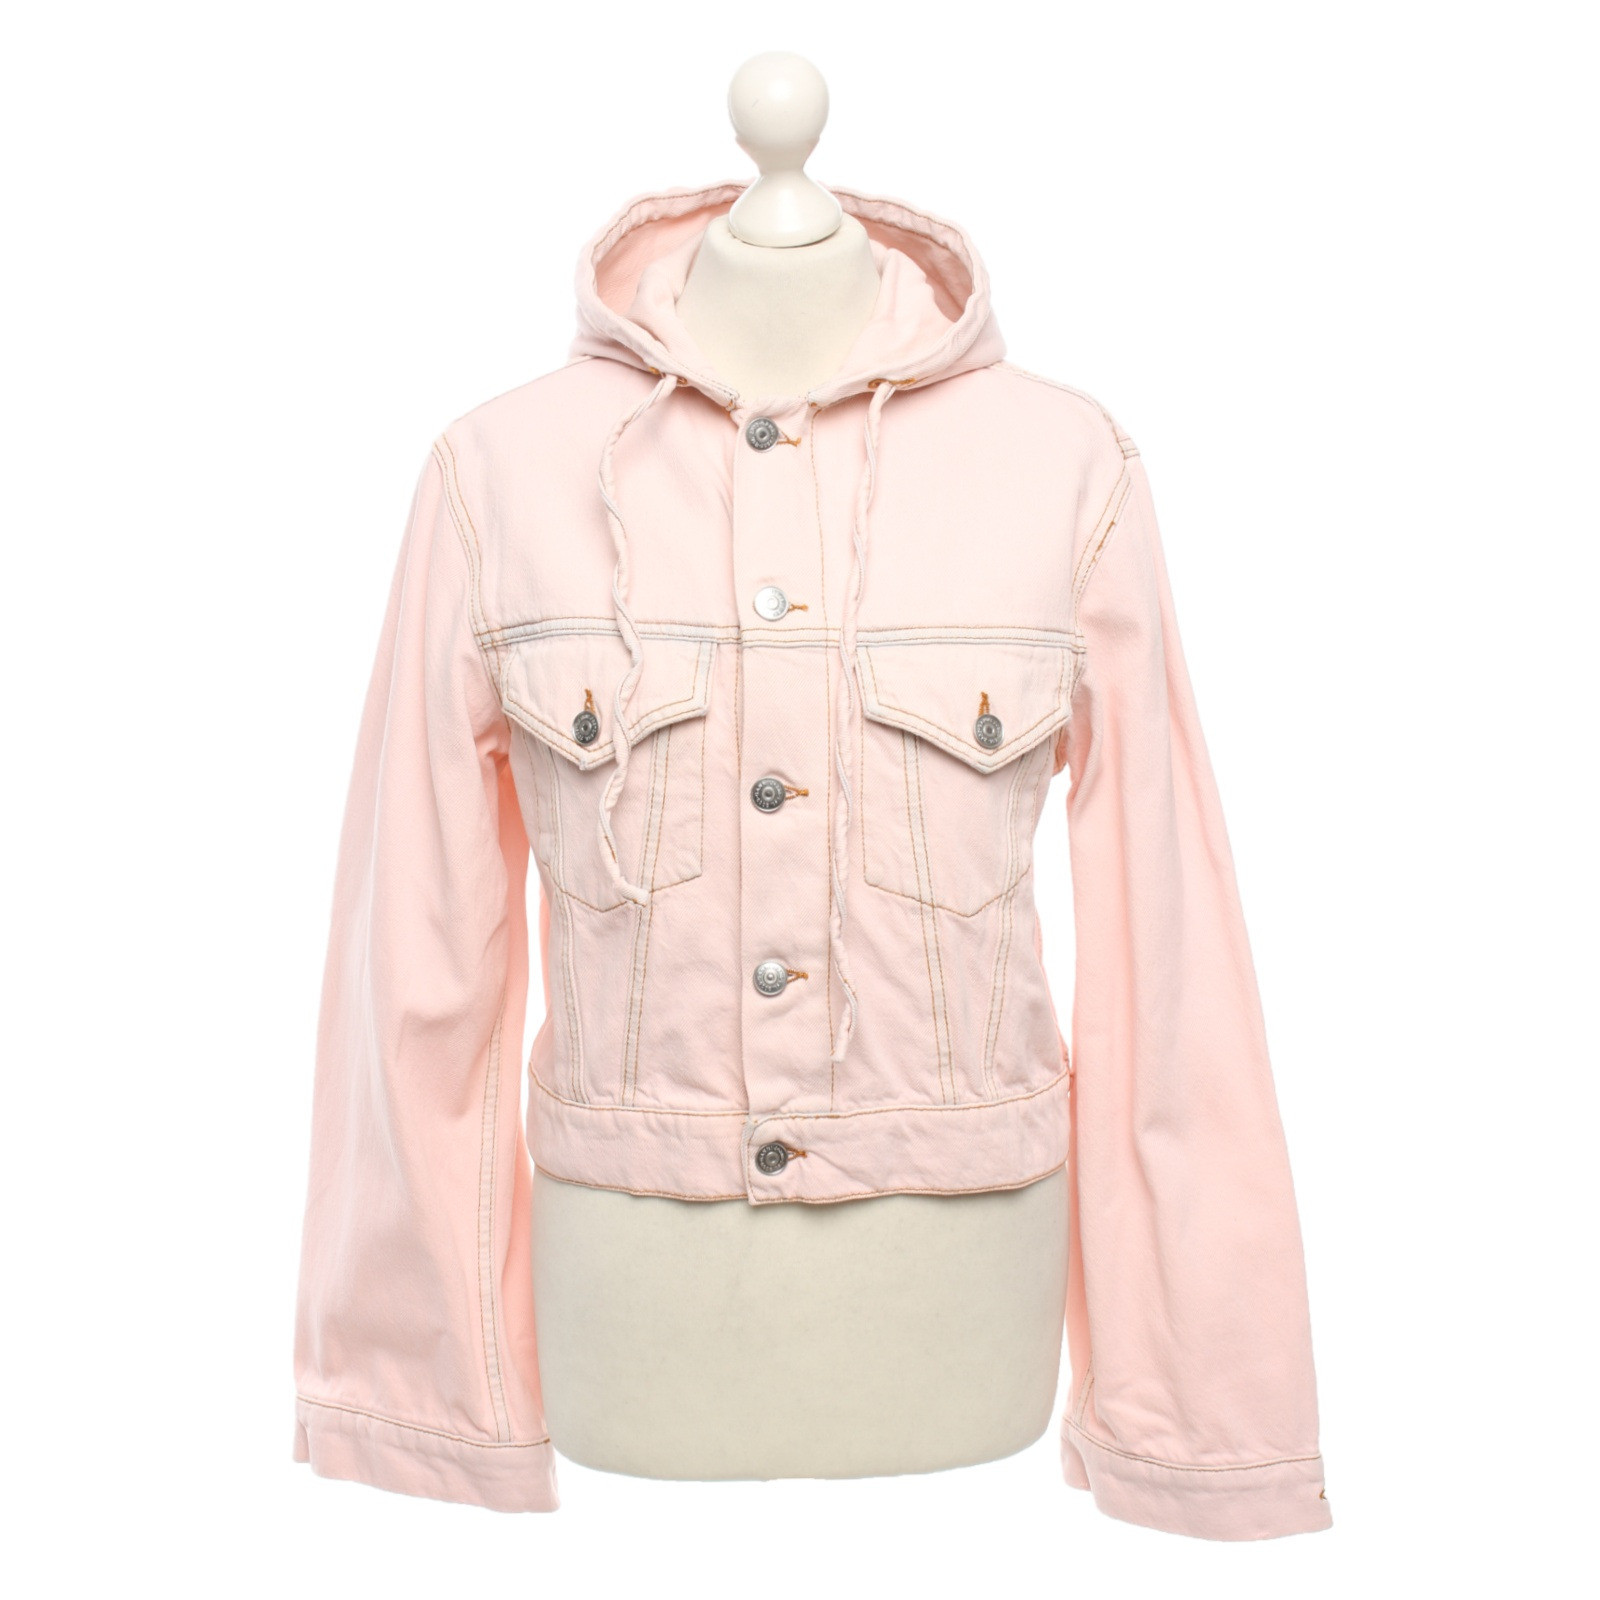 Ganni Jacke/Mantel aus Baumwolle in Rosa / Pink - Second Hand Ganni Jacke/ Mantel aus Baumwolle in Rosa / Pink gebraucht kaufen für 65€ (4089982)